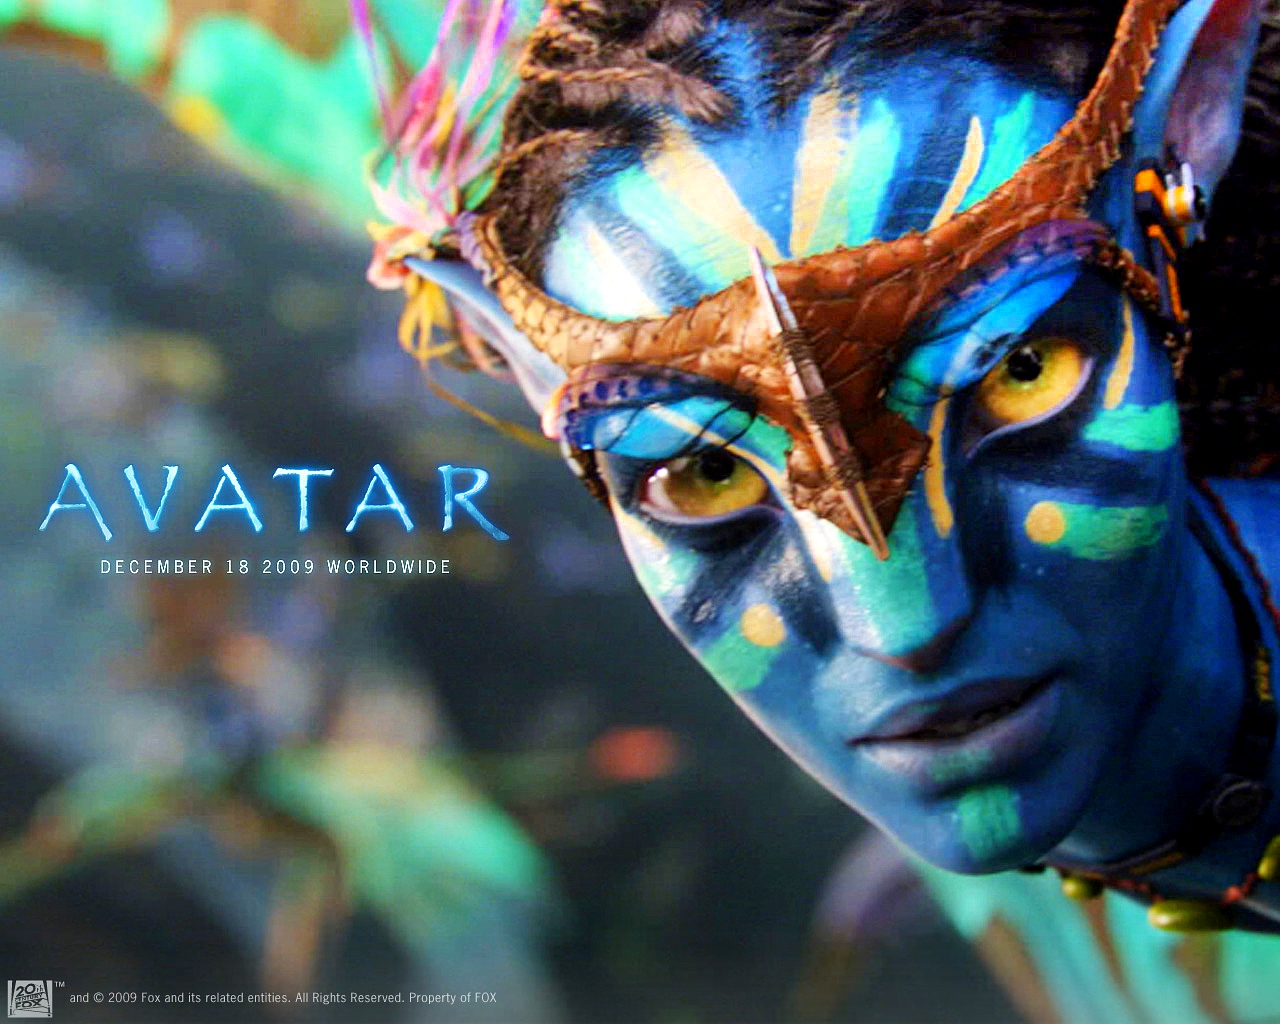 43+] Avatar HD Wallpapers 1080p - WallpaperSafari